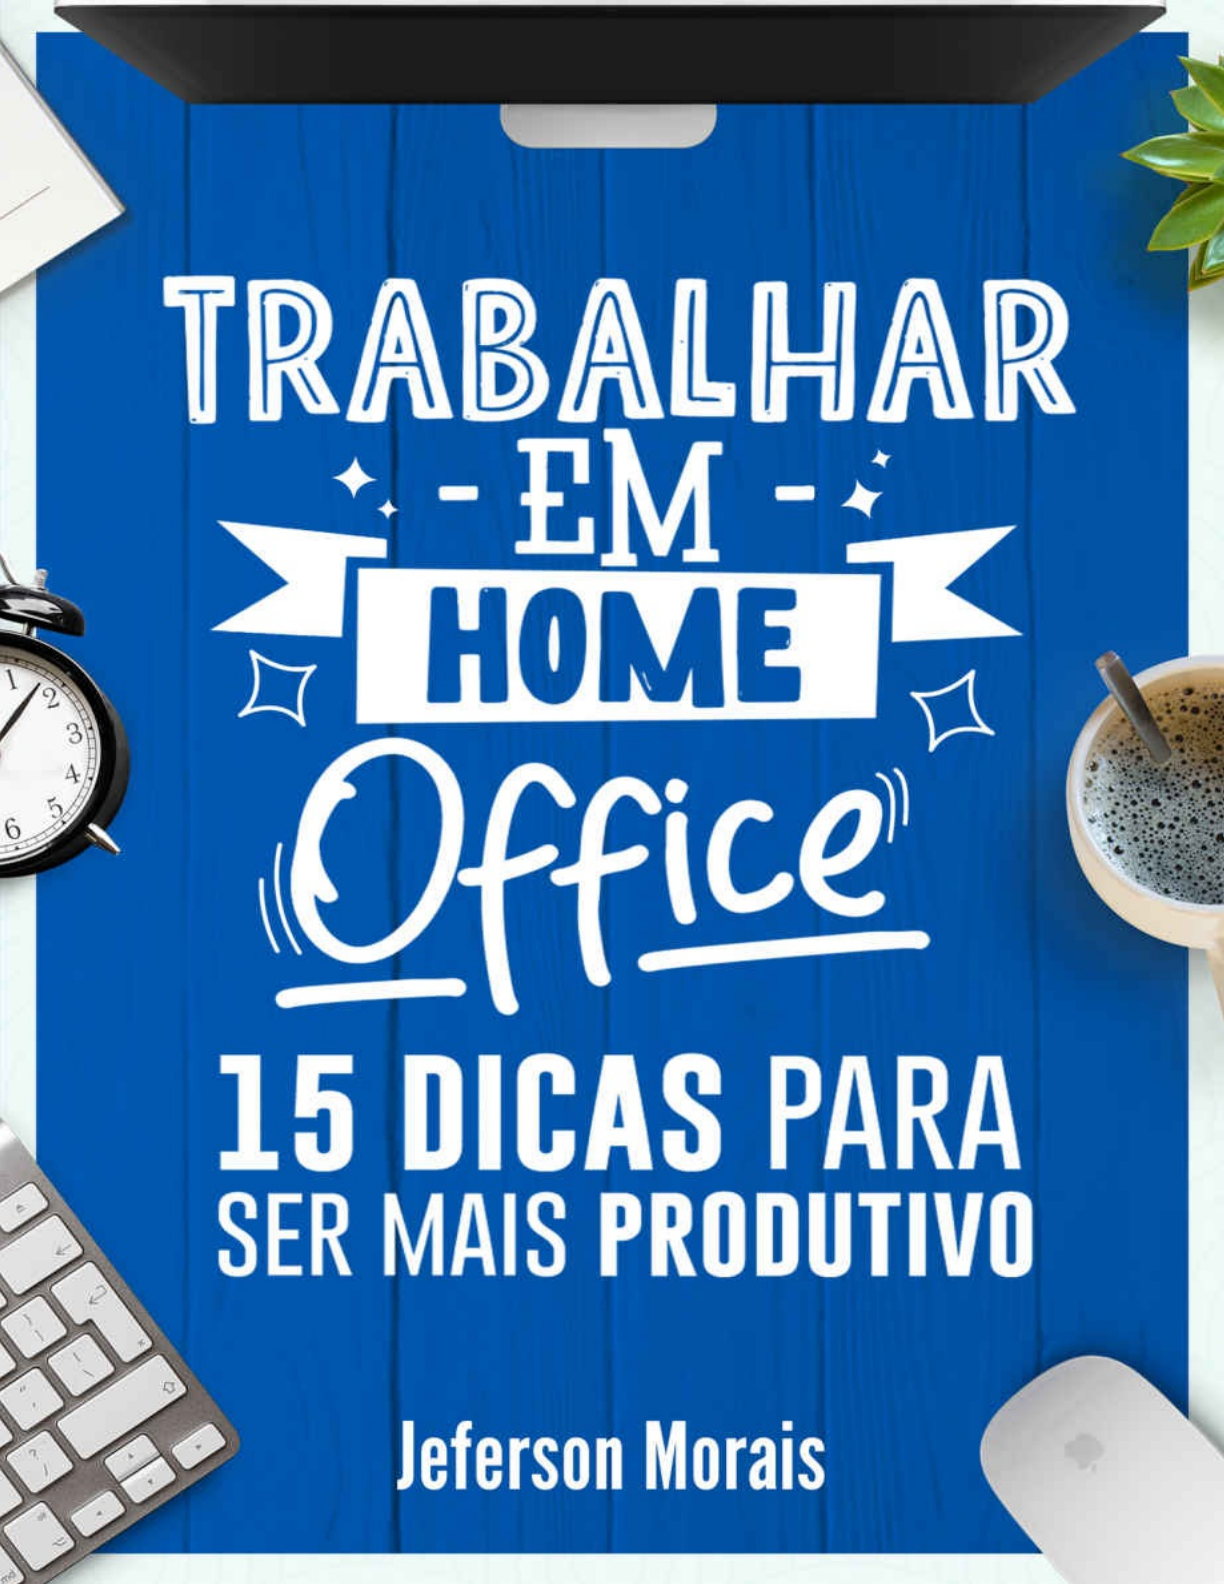 Digitador freelancer: dicas para aumentar sua renda em home office